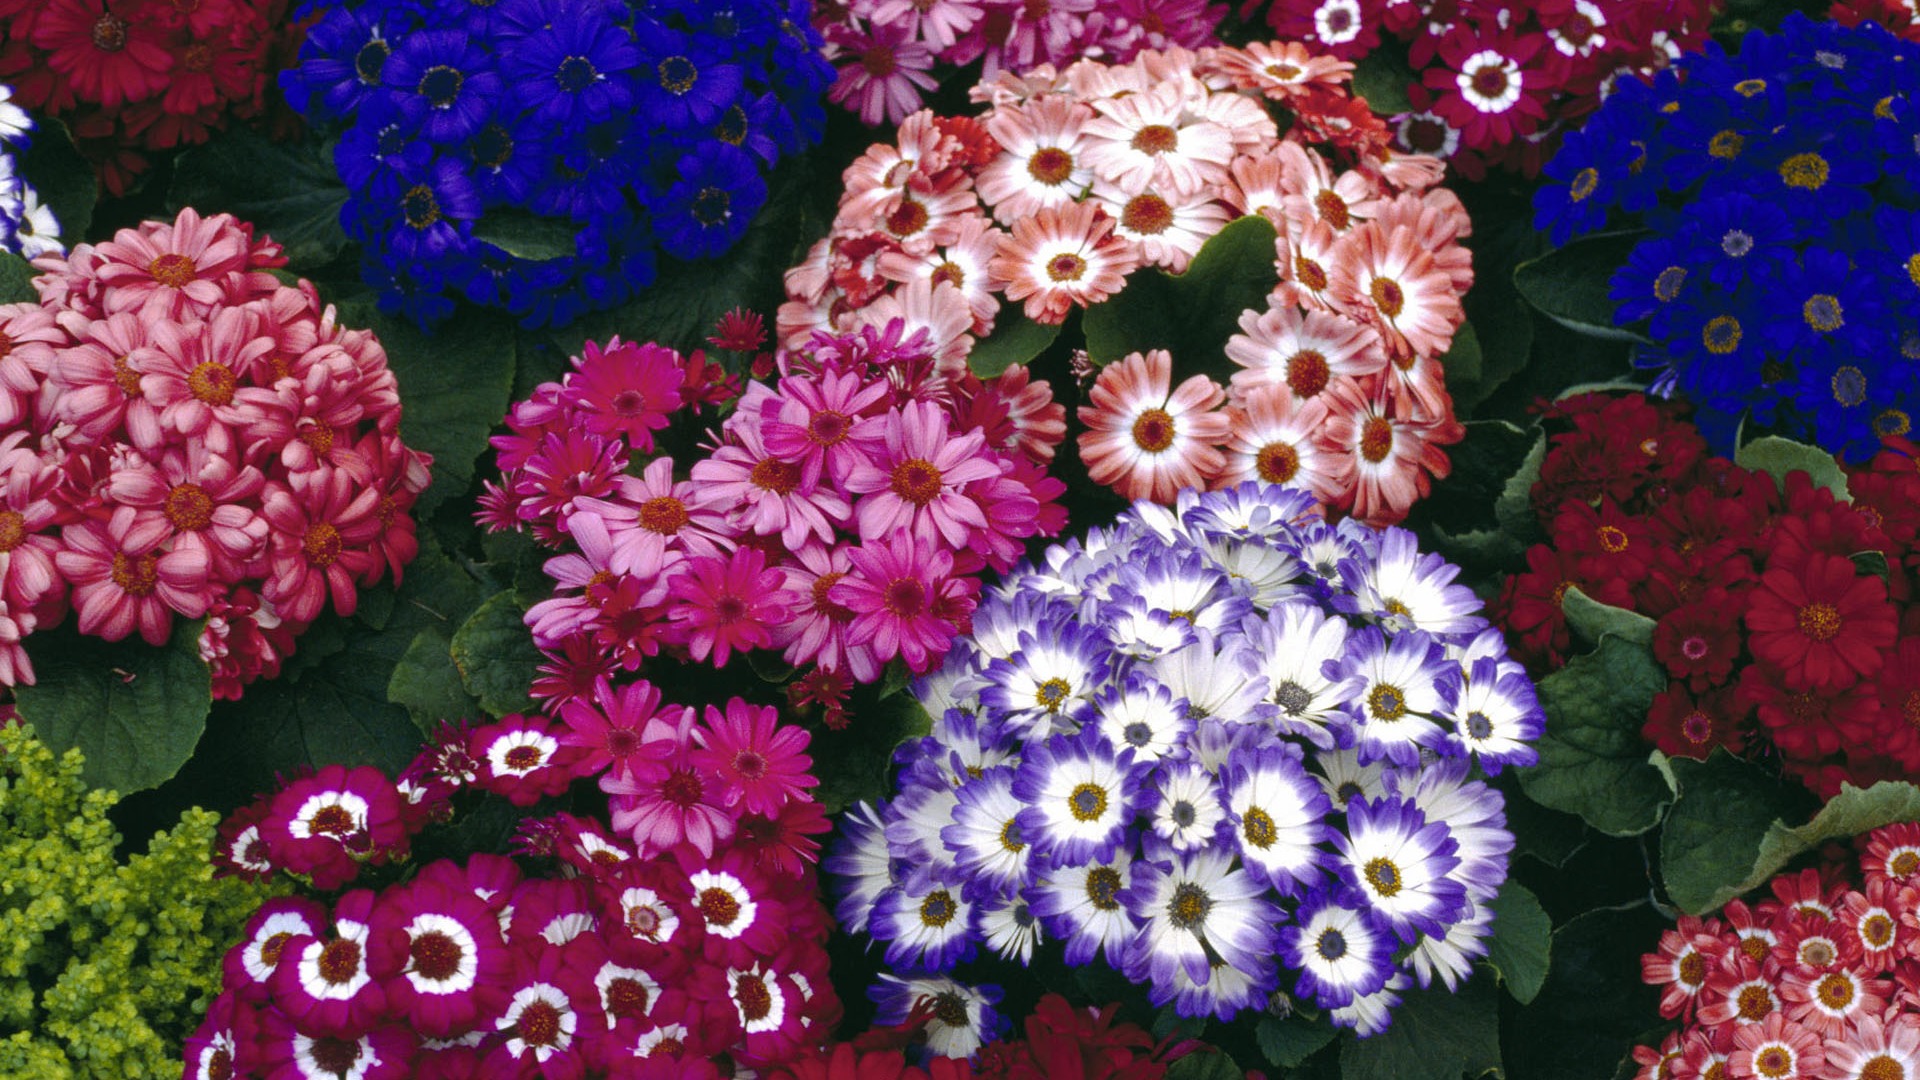 Pantalla ancha de flores fondos de escritorio de close-up #40 - 1920x1080